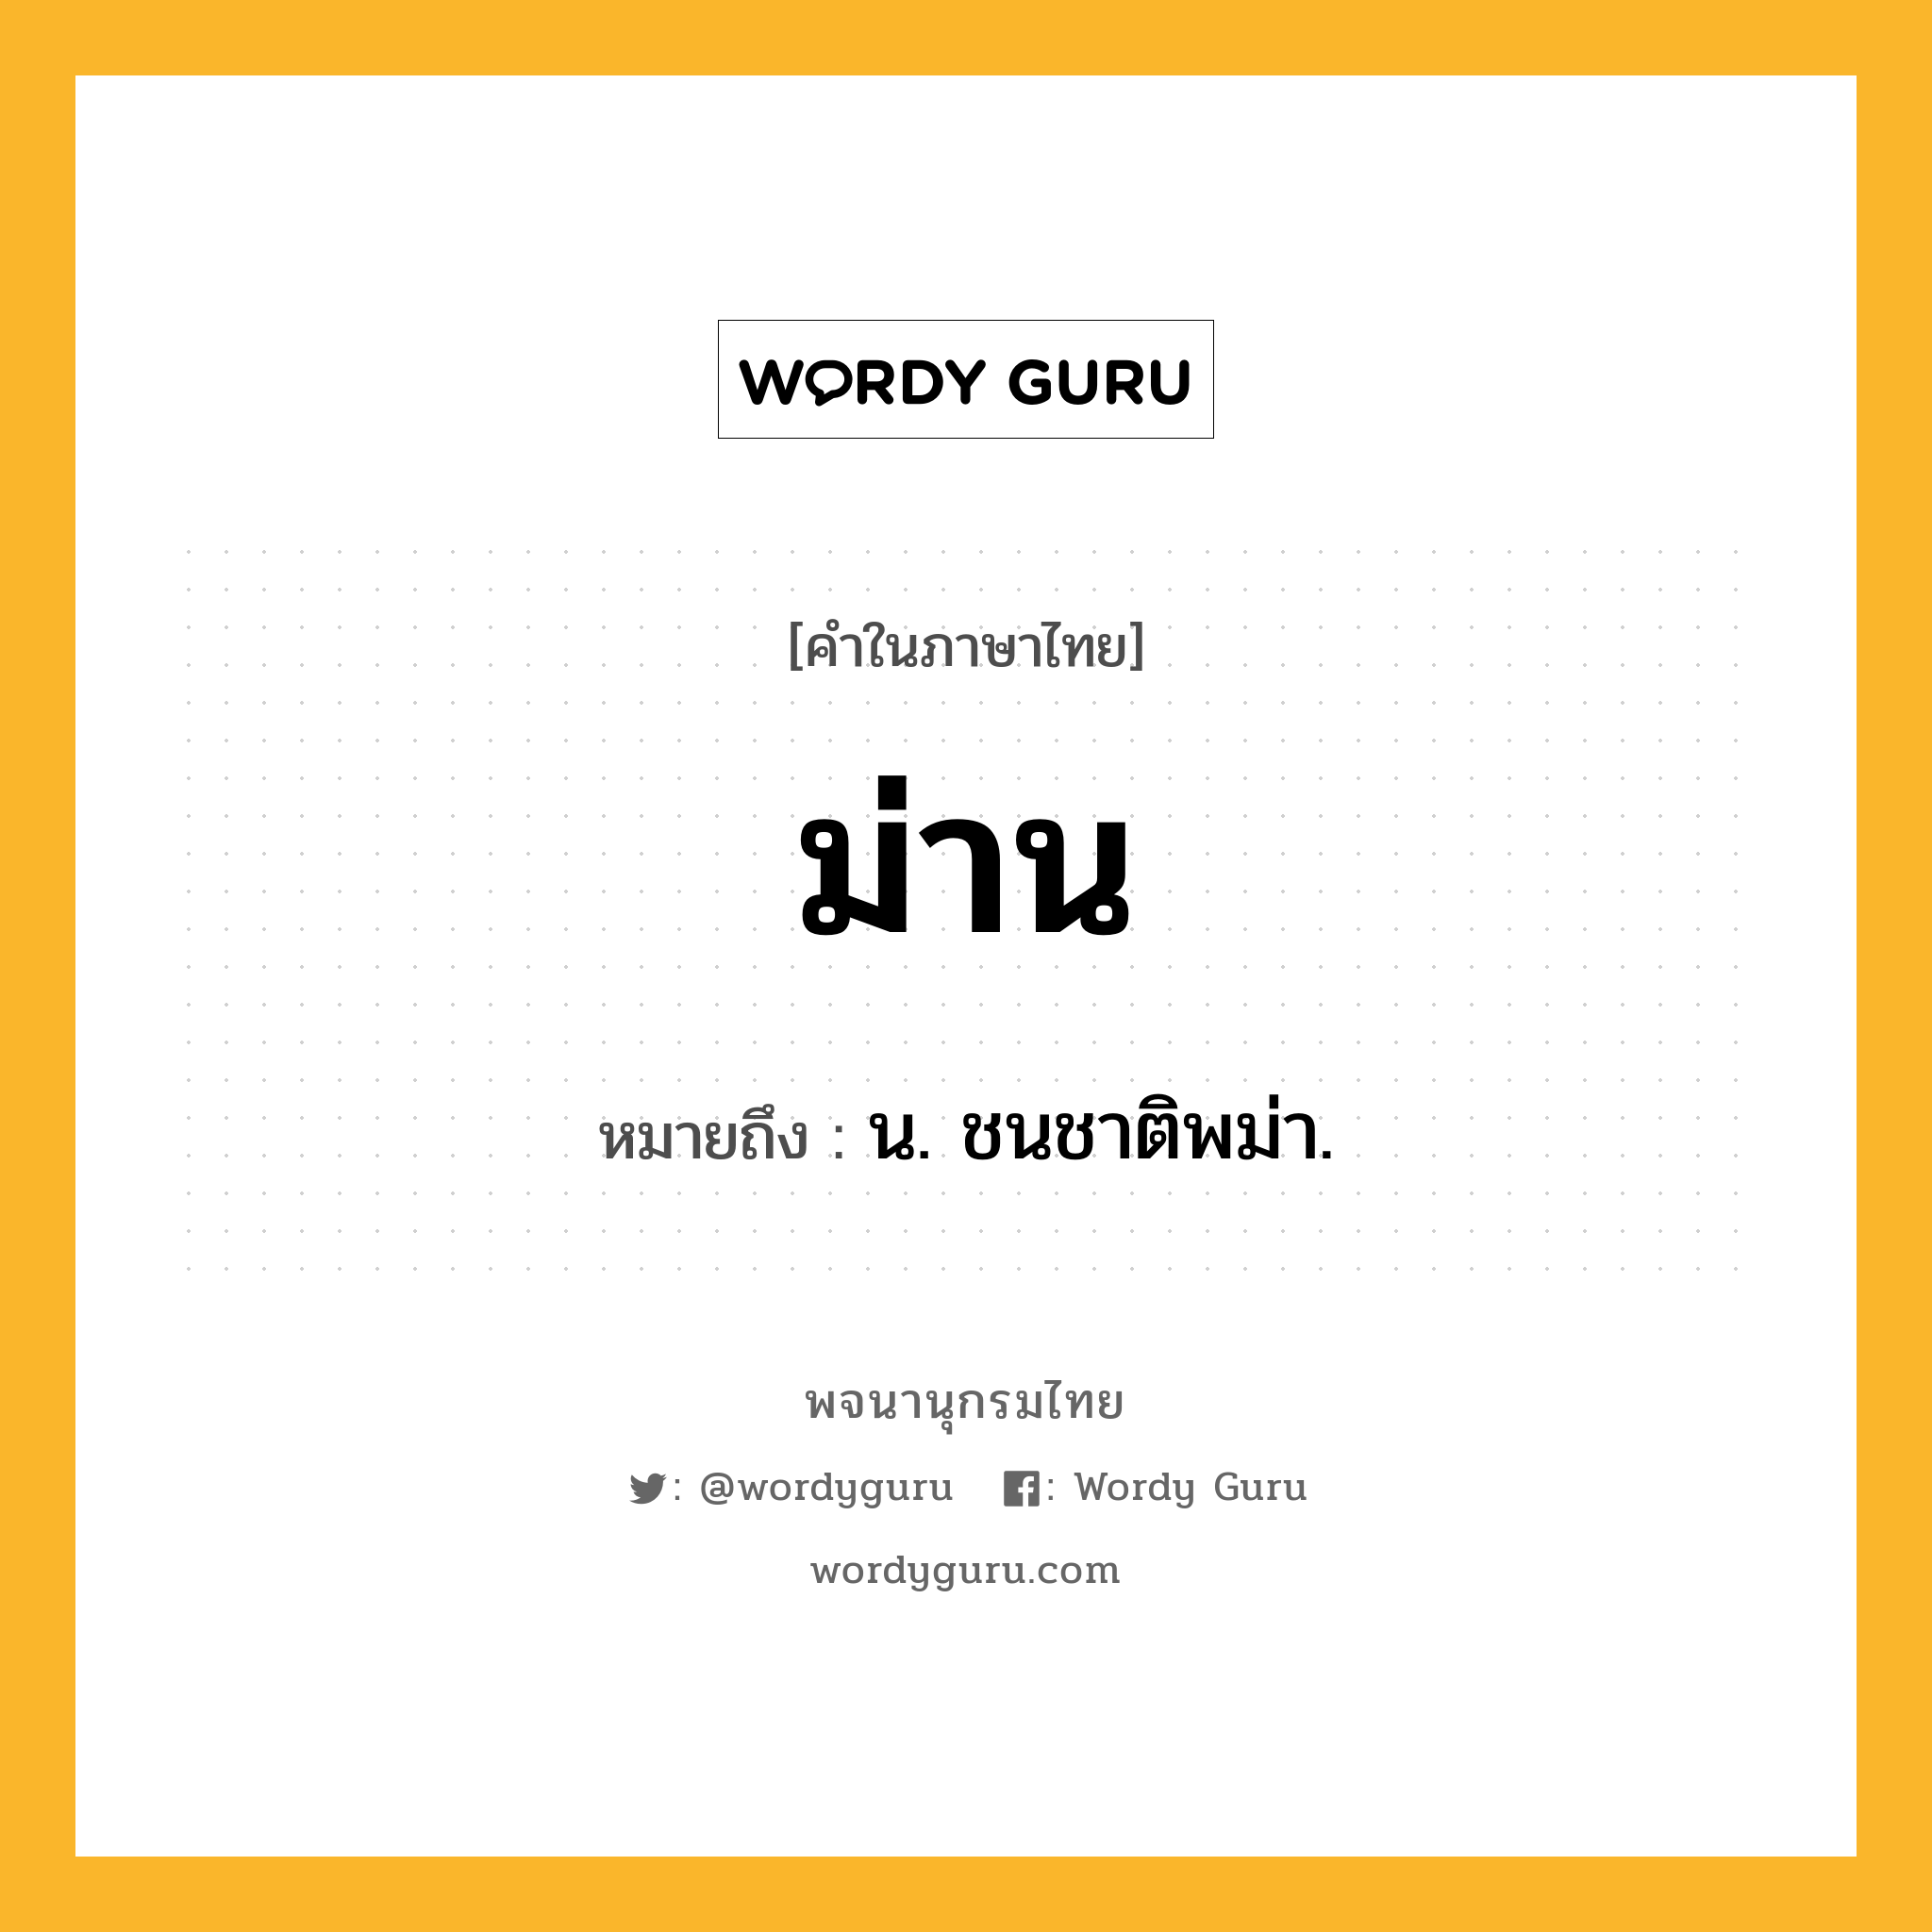 ม่าน หมายถึงอะไร?, คำในภาษาไทย ม่าน หมายถึง น. ชนชาติพม่า.